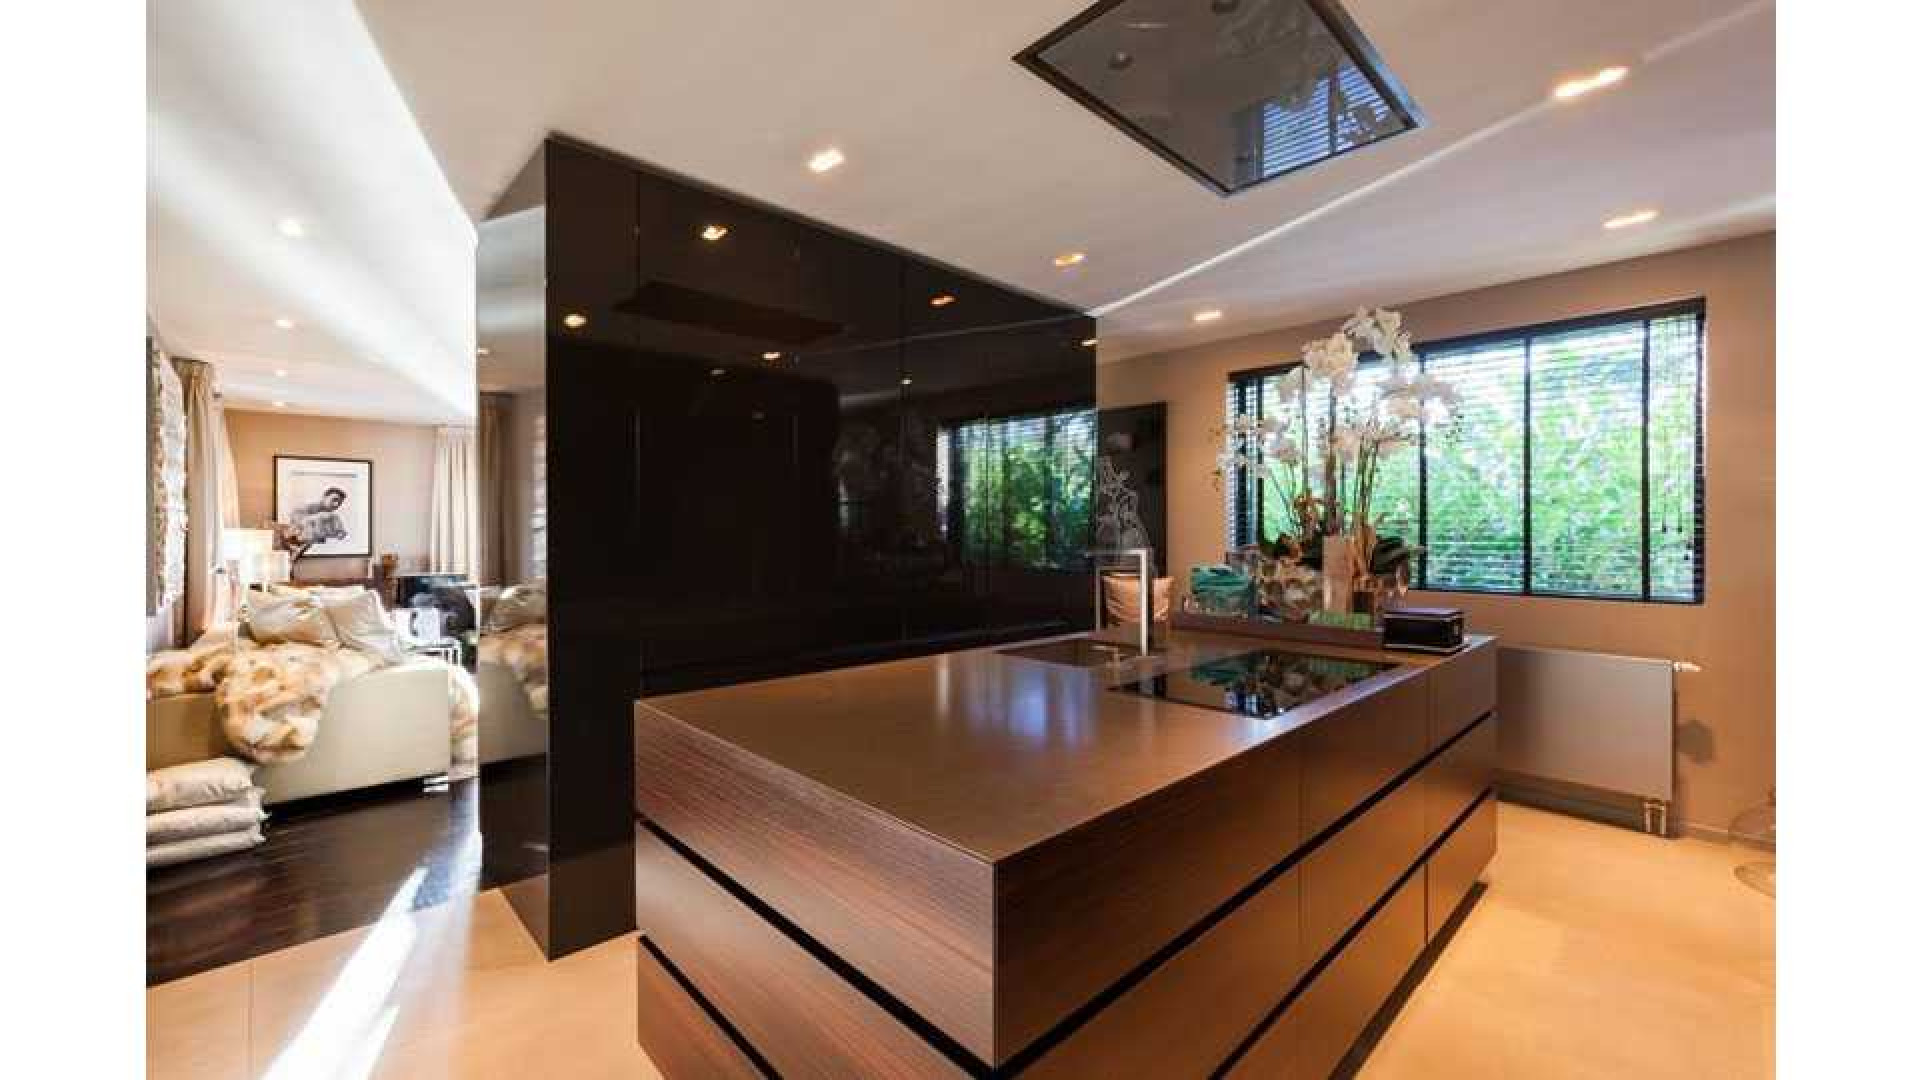 Top interieur stylist Eric Kuster zet zijn eigen droomvilla te koop. Zie foto's 9